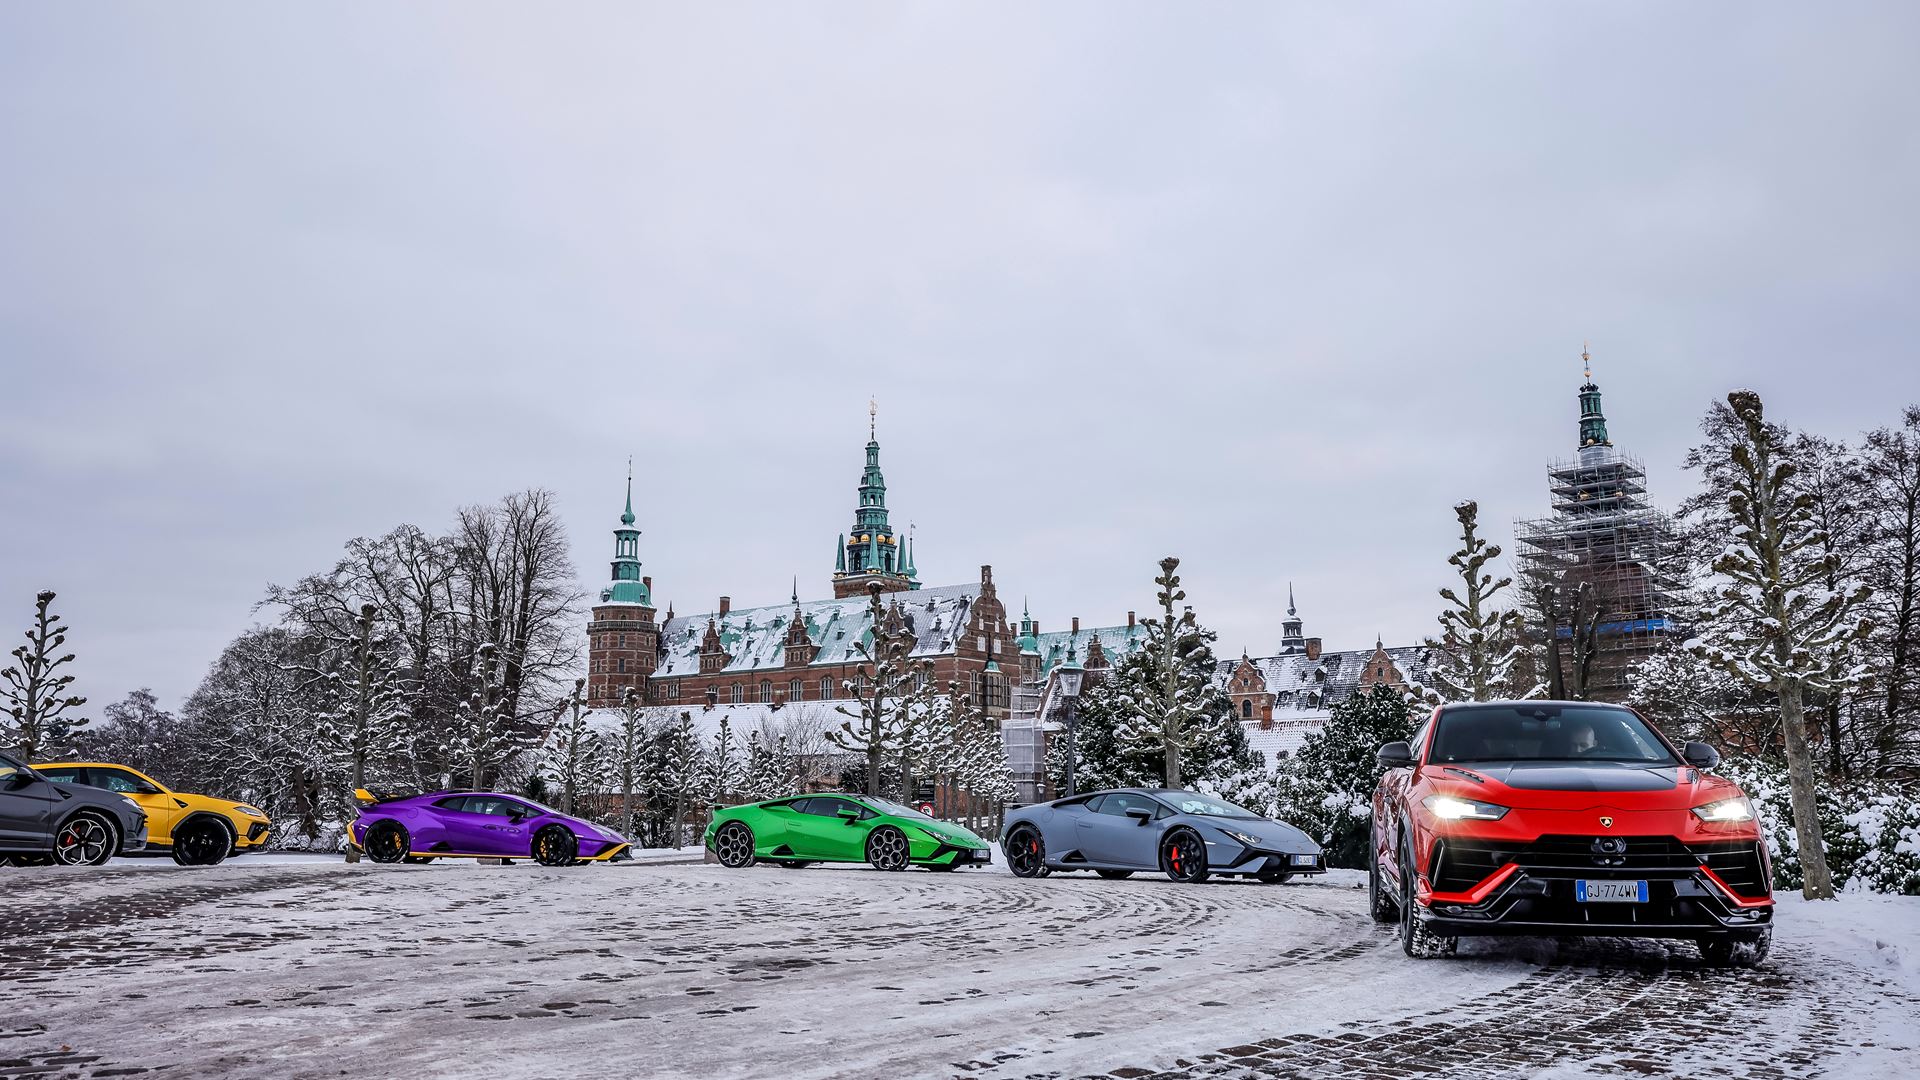 Lamborghini in Scandinavia: a winter convoy through Denmark and Sweden